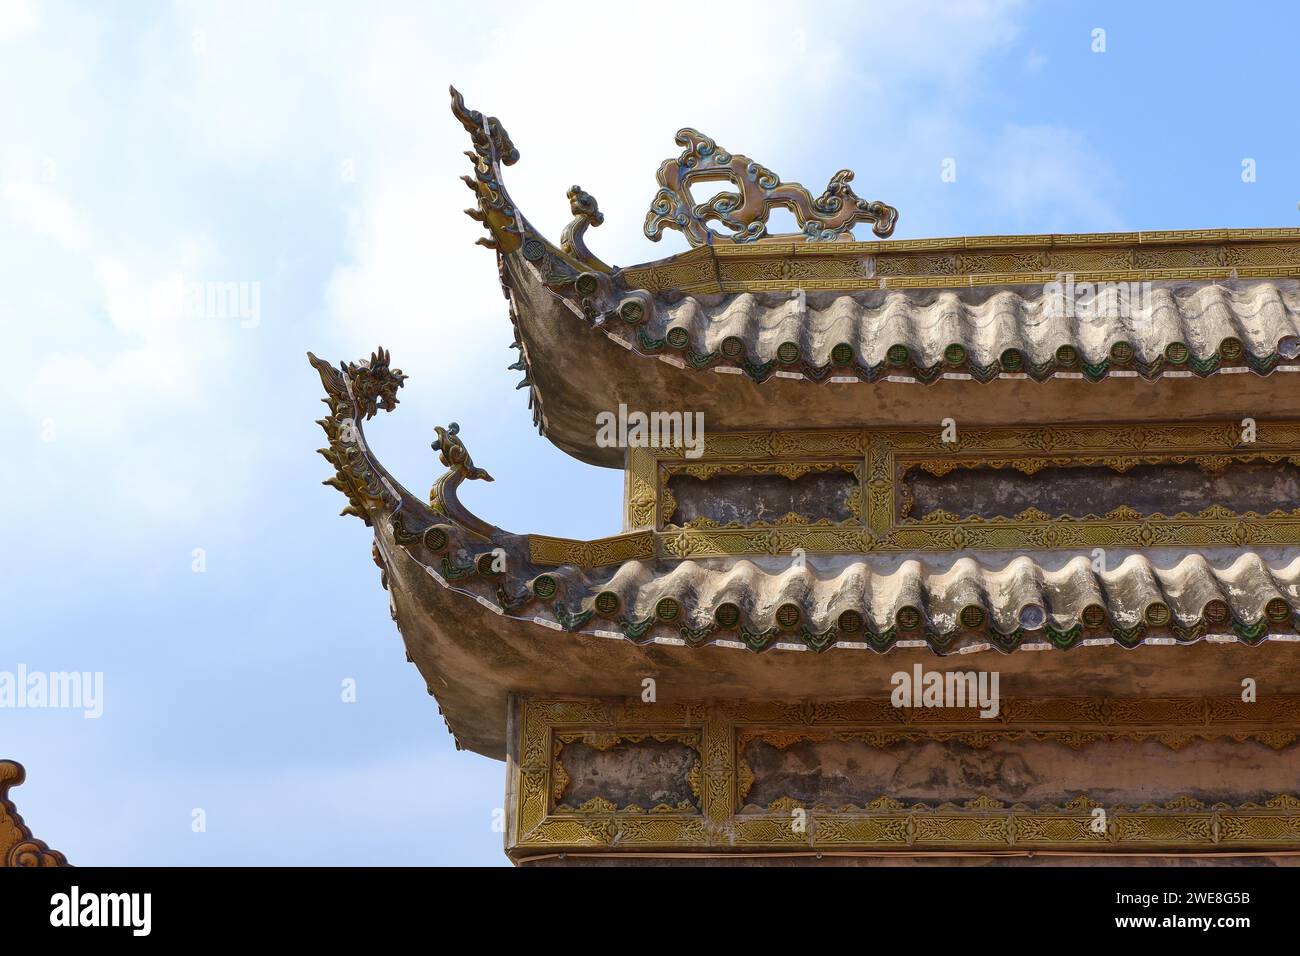 Ornamente auf dem Dach eines traditionellen vietnamesischen Tempels Stockfoto